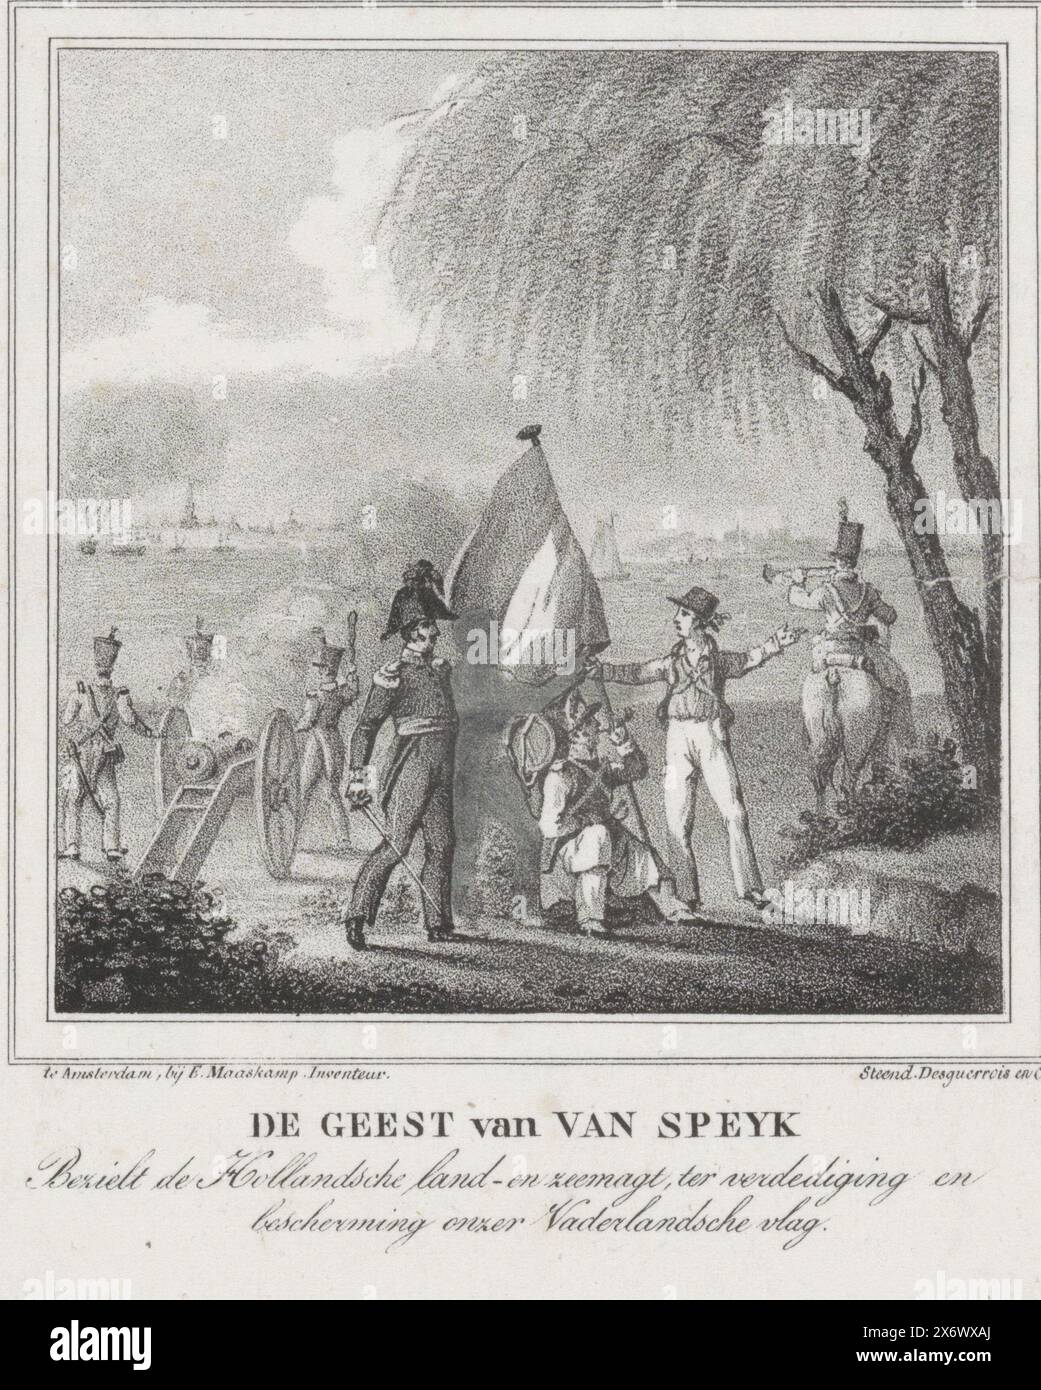 Der Geist von Jan van Speijk, 1831, der Geist von Van Speyk inspiriert die niederländischen Land- und Seestreitkräfte, unsere niederländische Flagge (Titel auf Objekt) zu verteidigen und zu schützen, verschiedene Soldaten in einer Landschaft. Im Raum zwischen den Figuren ist die verborgene Figur von Jan van Speijk zu erkennen. In der Ferne der Sprung in die Luft von Jan van Speijks Kanonenboot auf der Schelde bei Antwerpen am 5. Februar 1831., Druck, Druckerei: Roelof van der Meulen, nach Entwurf: Evert Maaskamp, (erwähnt auf Objekt), Drucker: Desguerrois & Co., (erwähnt auf Objekt), nach Entwurf: Niederlande, Drucker: Amsterdam Stockfoto